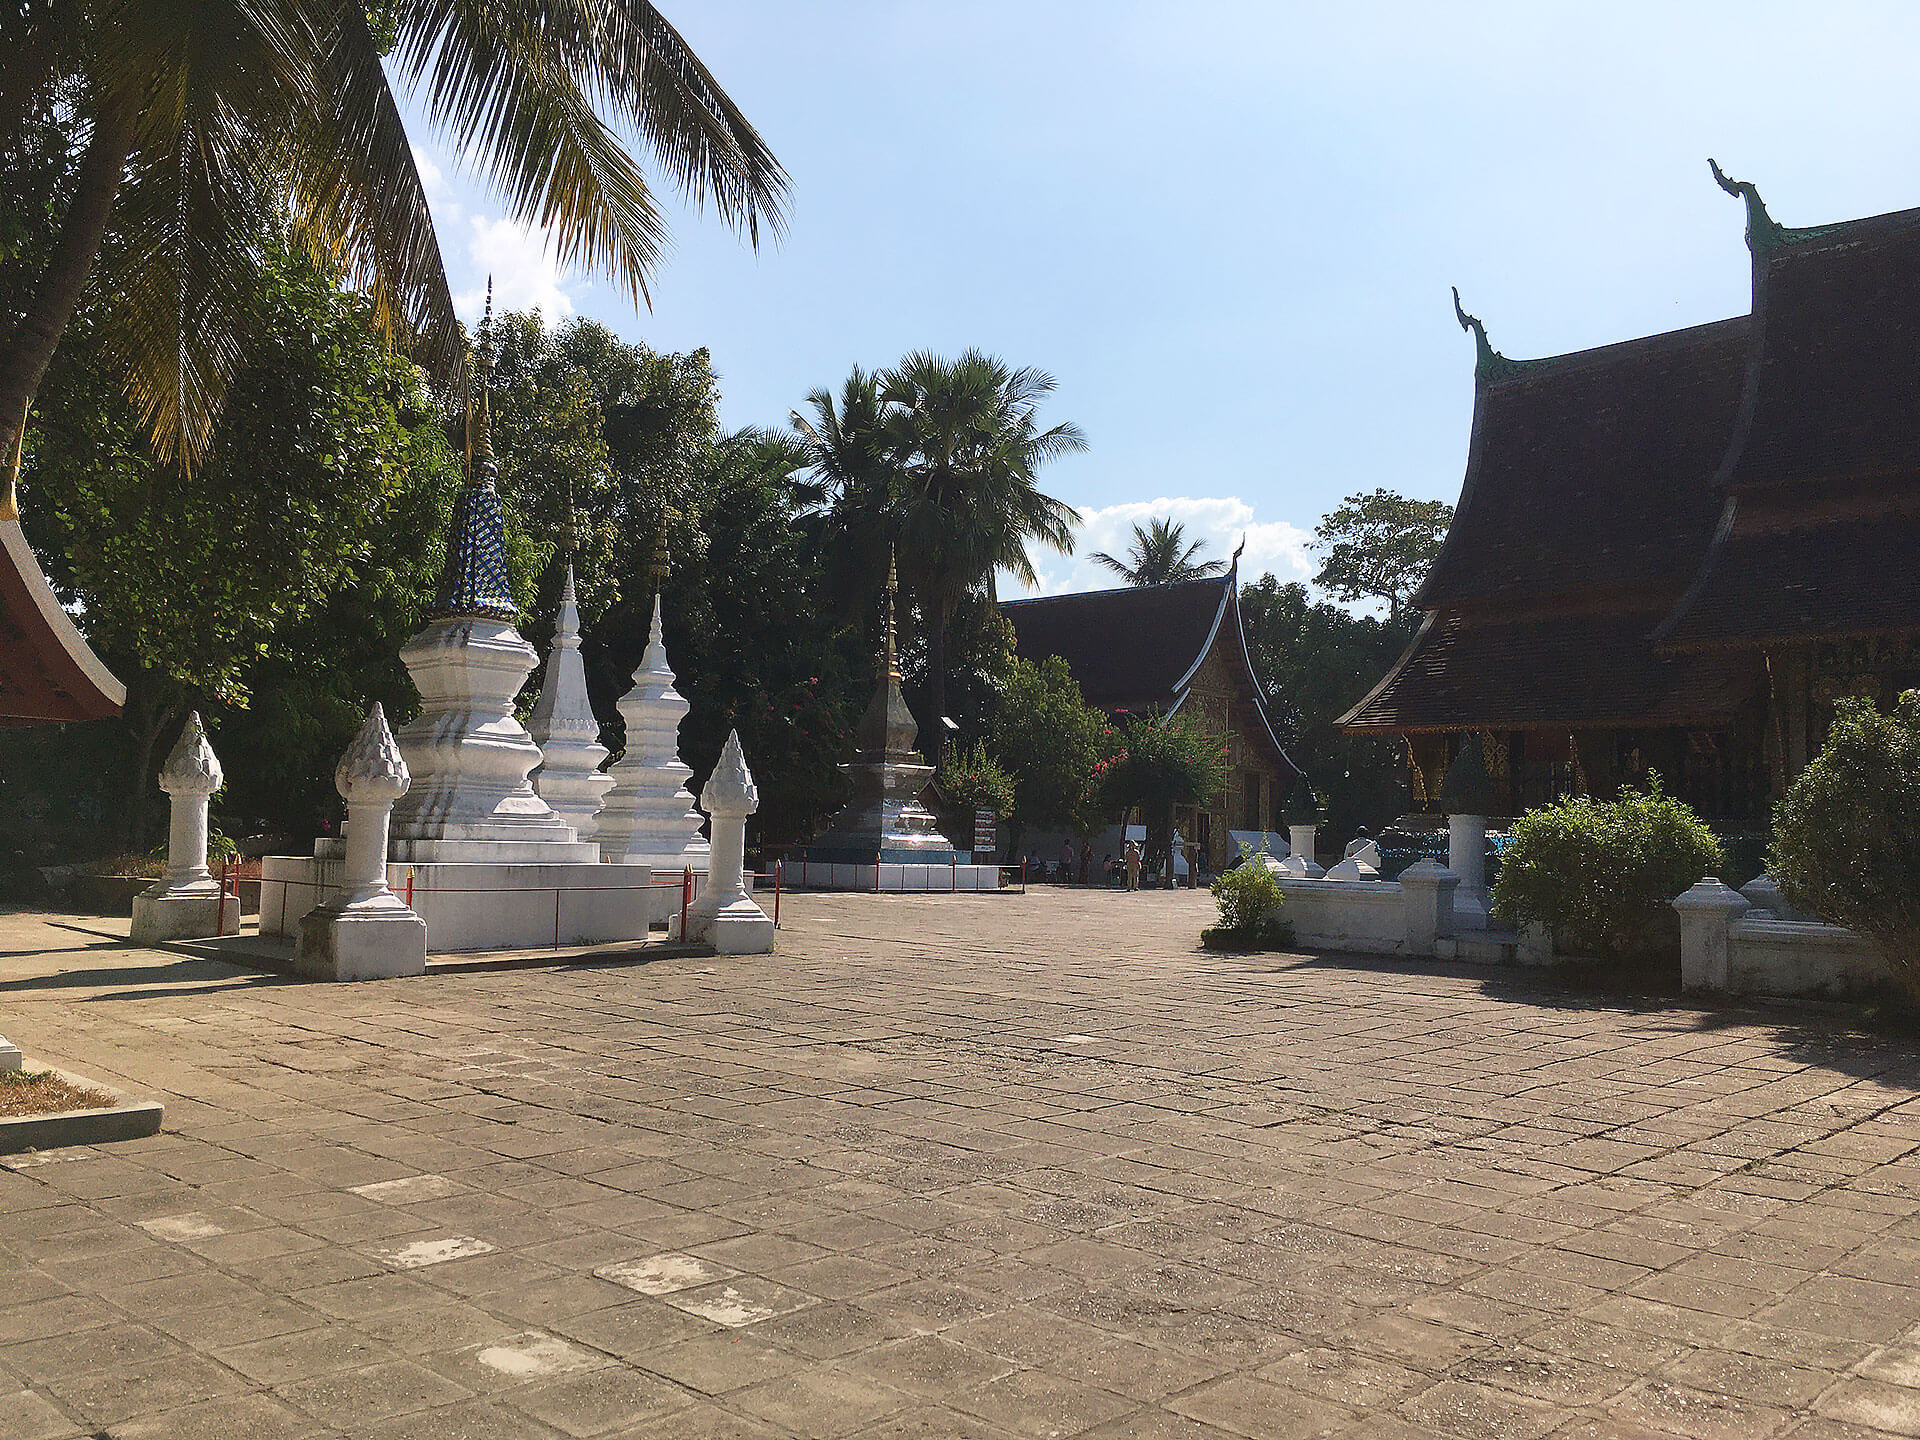 Wat Xieng Thong in Luang Prabang